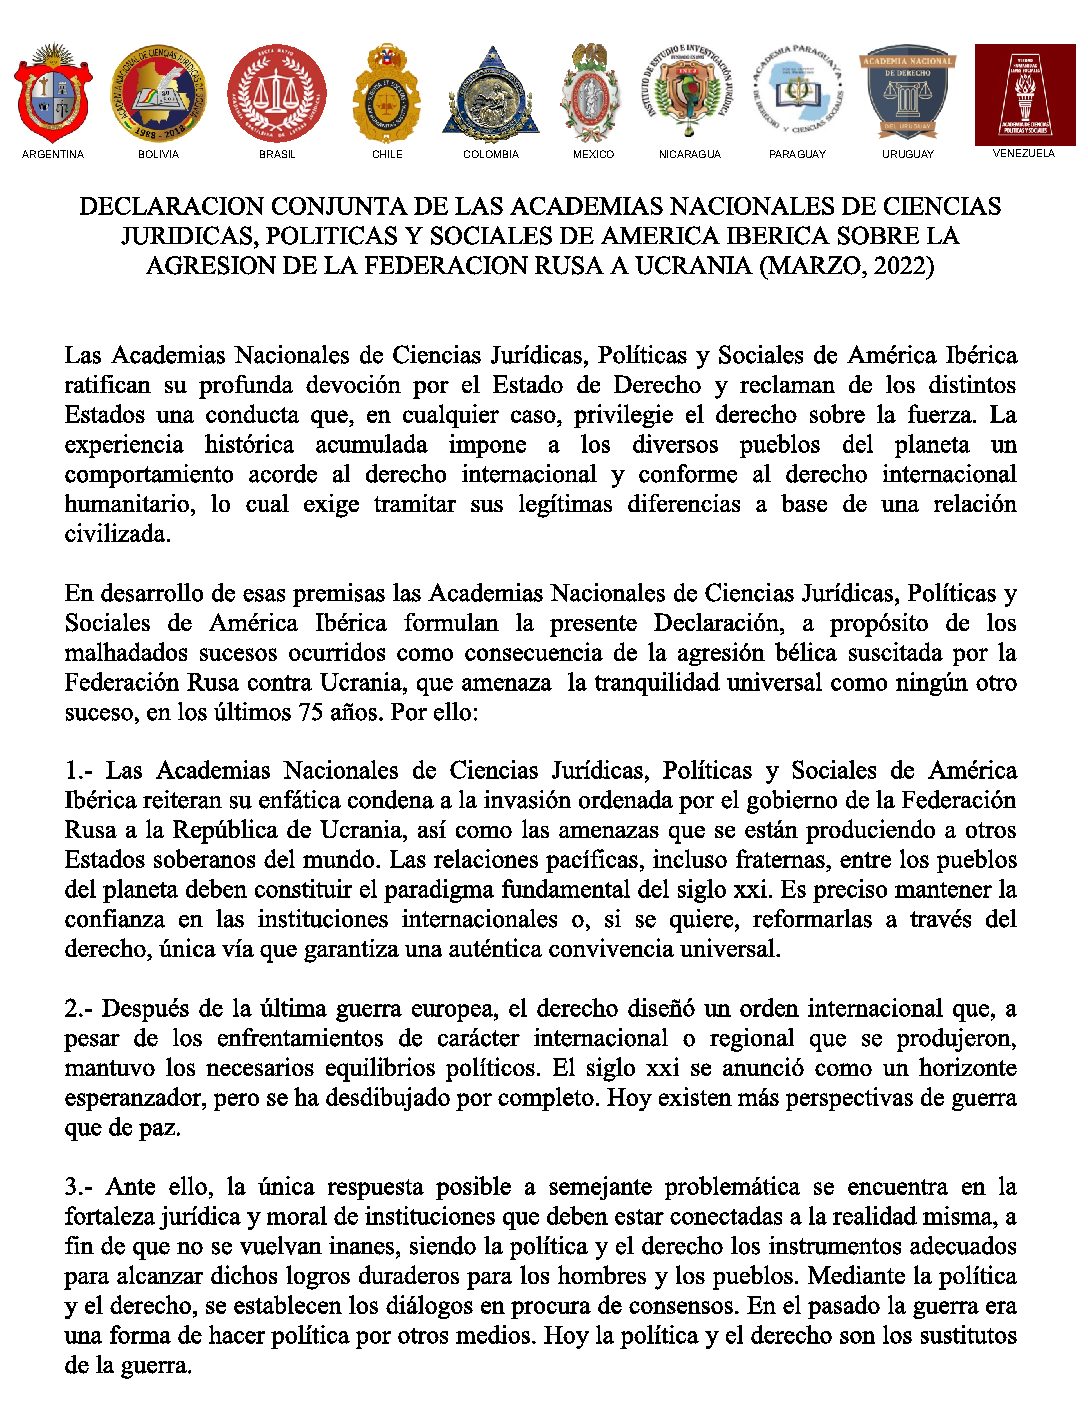 Declaración conjunta de las Academias Nacionales de Ciencias Jurídicas, Políticas y Sociales de América Ibérica sobre la agresión de la Federación Rusa a Ucrania (marzo, 2022)